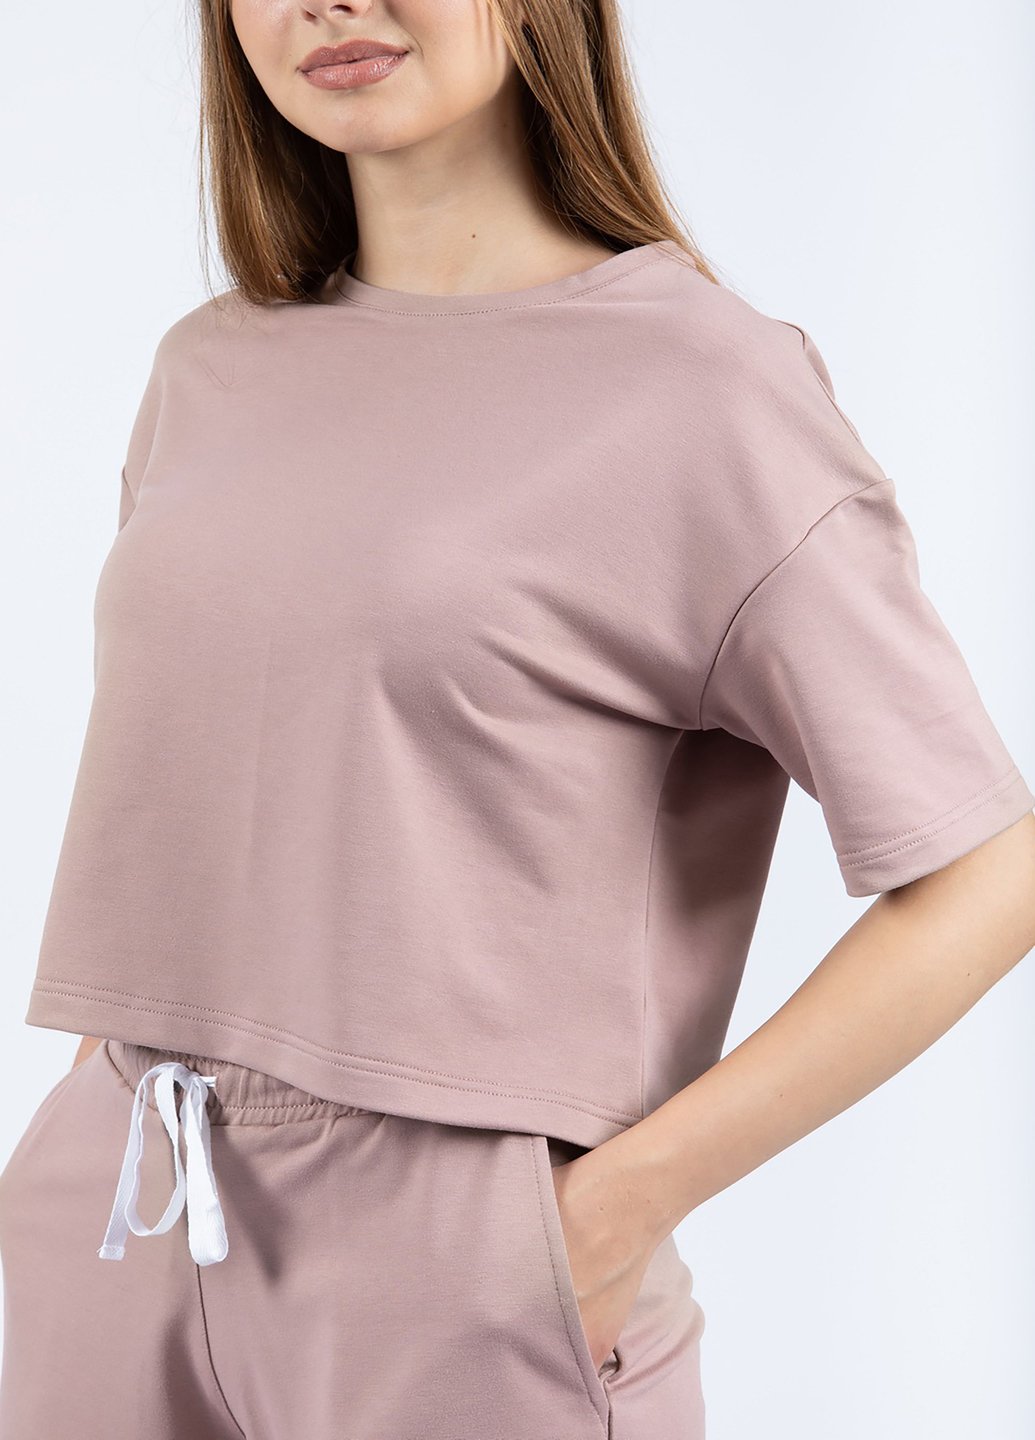 Купить Оверсайз футболка женская Merlini Нарбон 800000006 - Пудровый, 42-44 в интернет-магазине